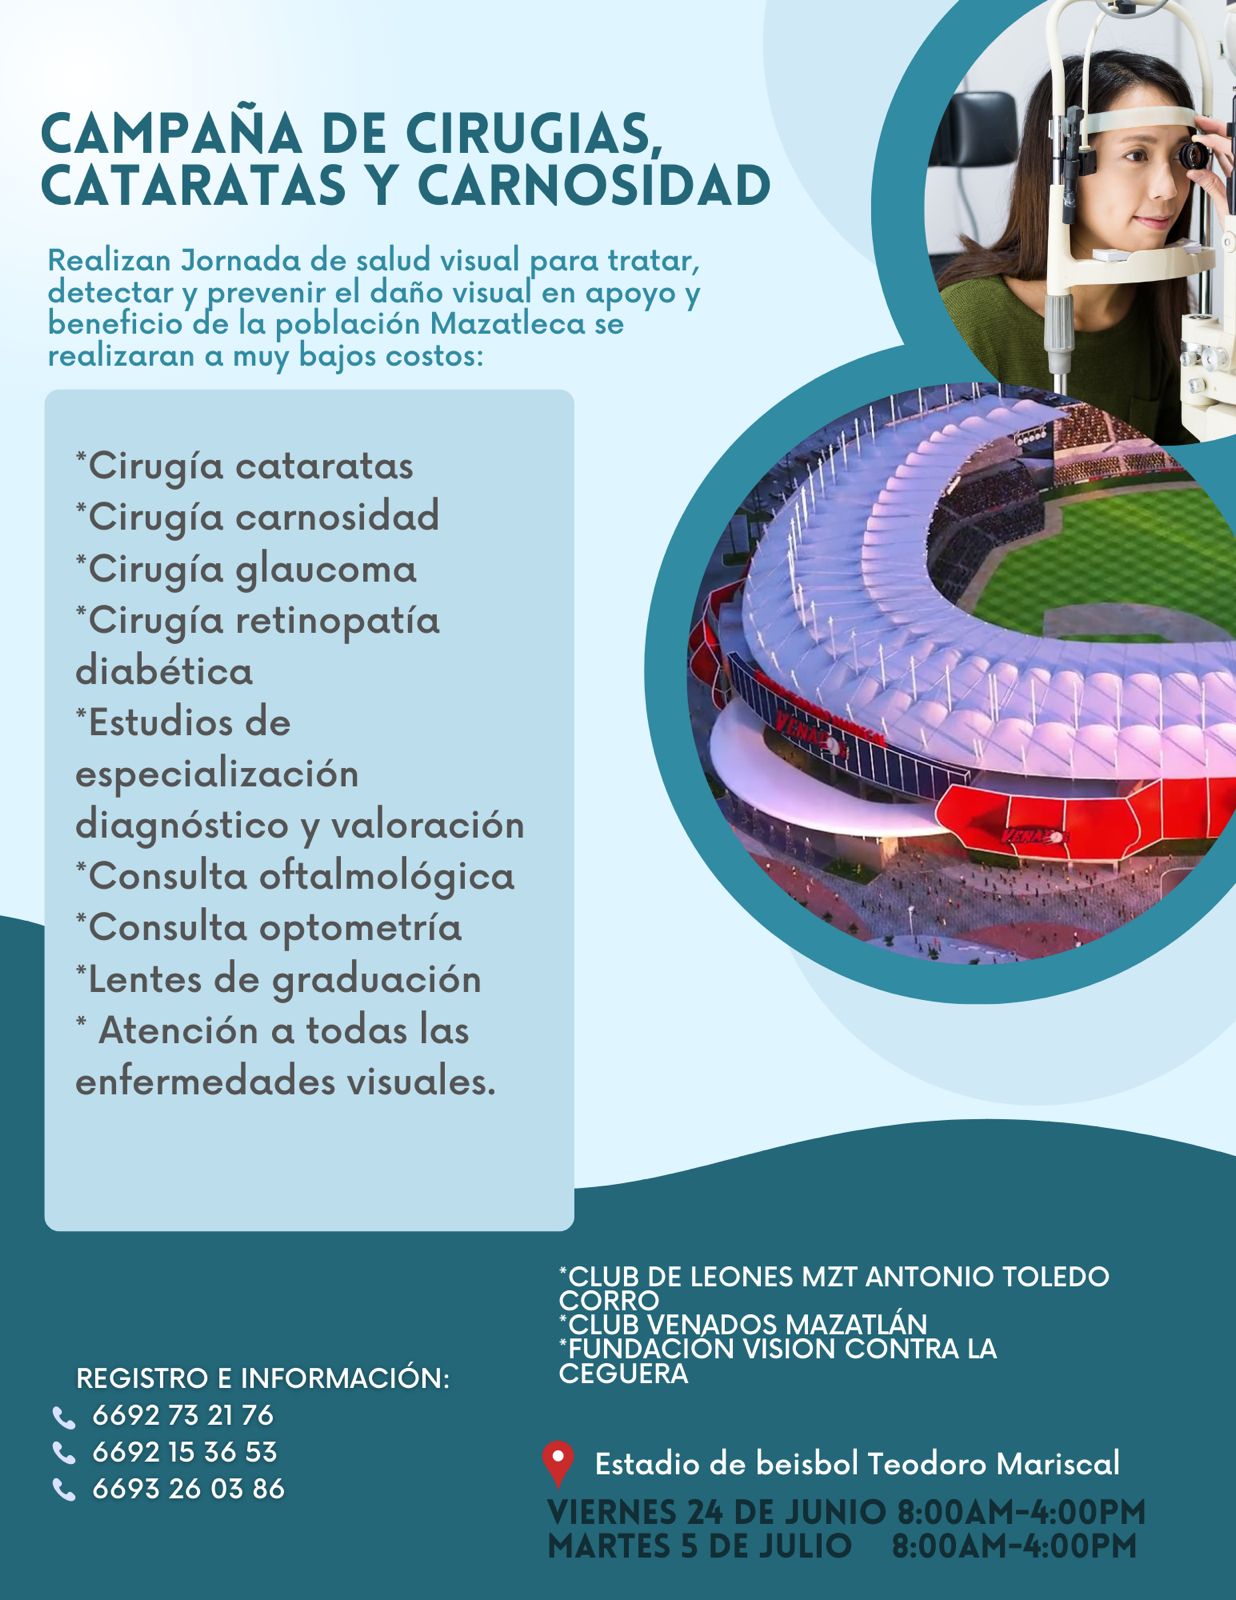 ¡Atención Mazatlán! Este viernes será la campaña de Cirugías de Cataratas y Carnosidad